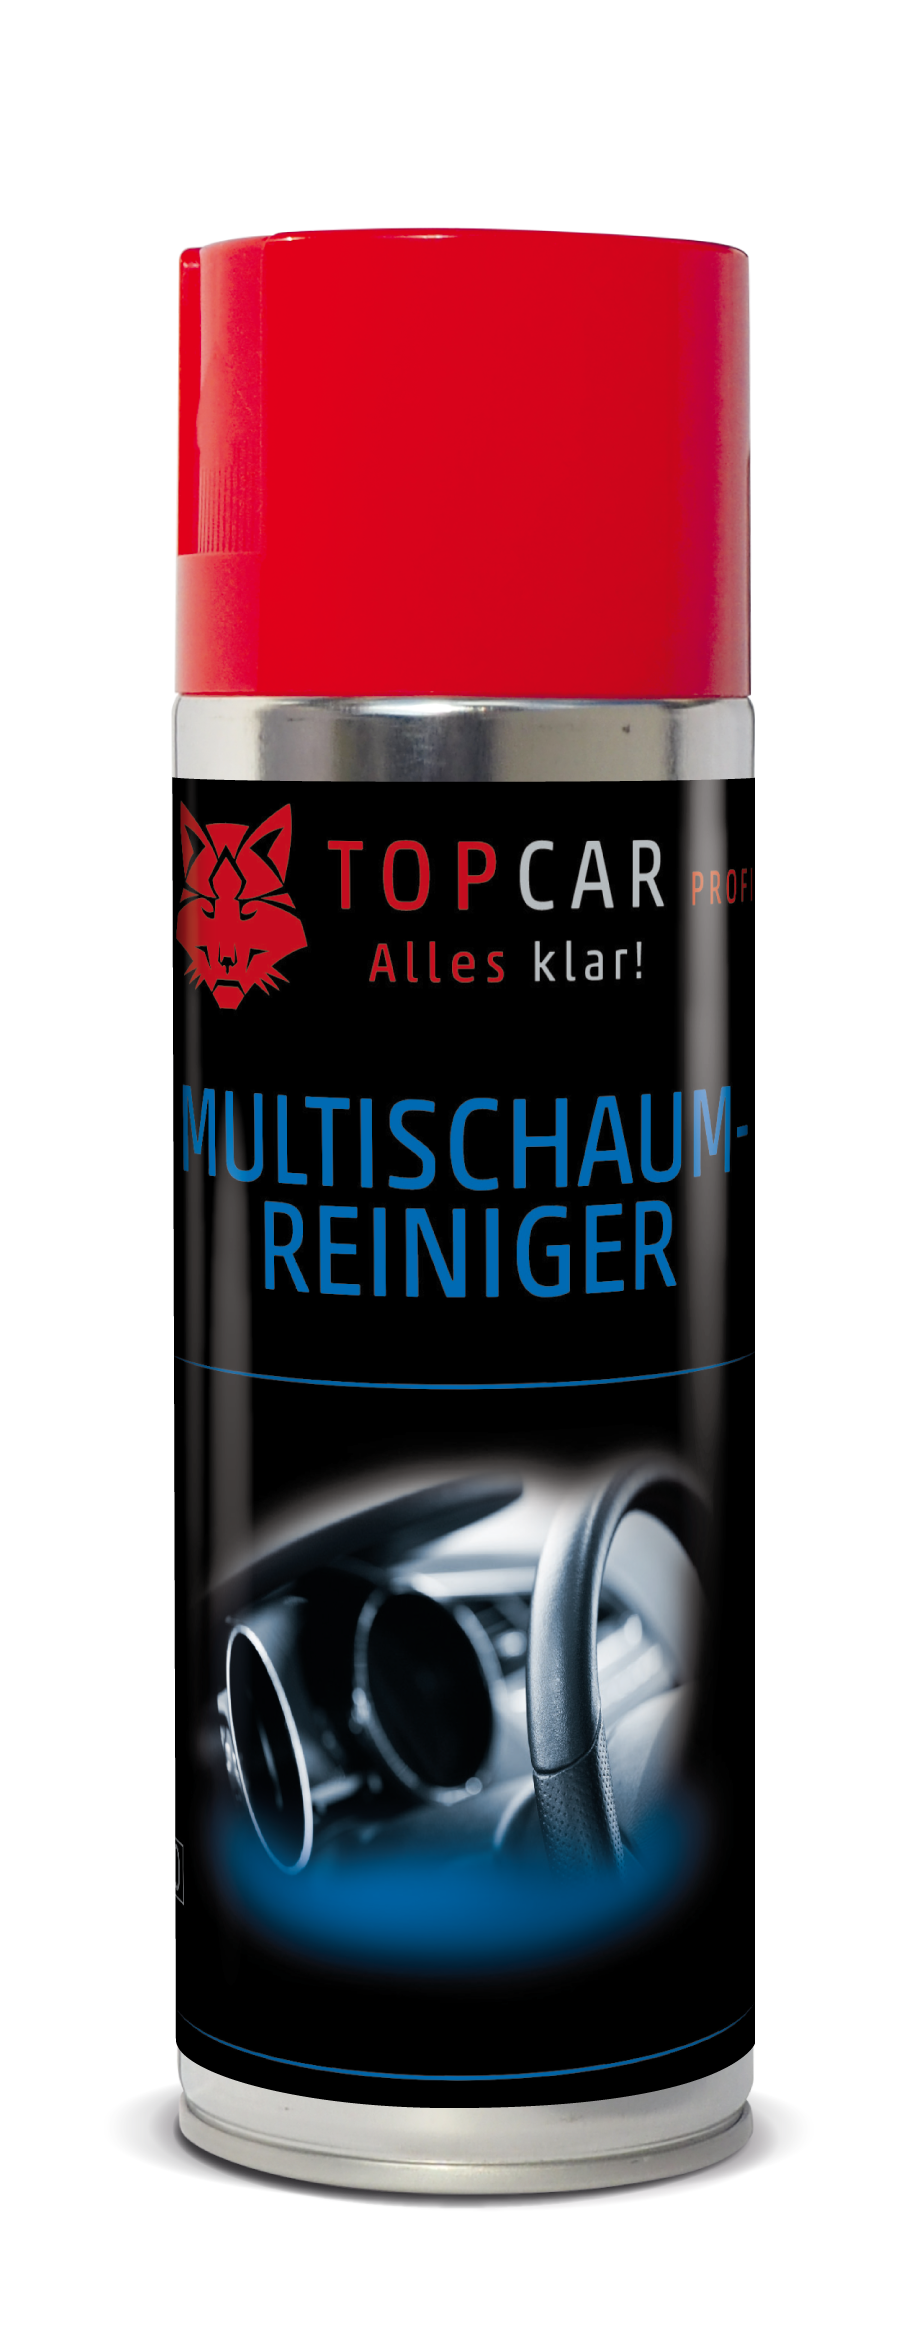 TOP CAR Multi-Schaumreiniger - Textilreiniger 400ml Dose - Weigola Hygienevertrieb -  - Weigola Hygienevertrieb